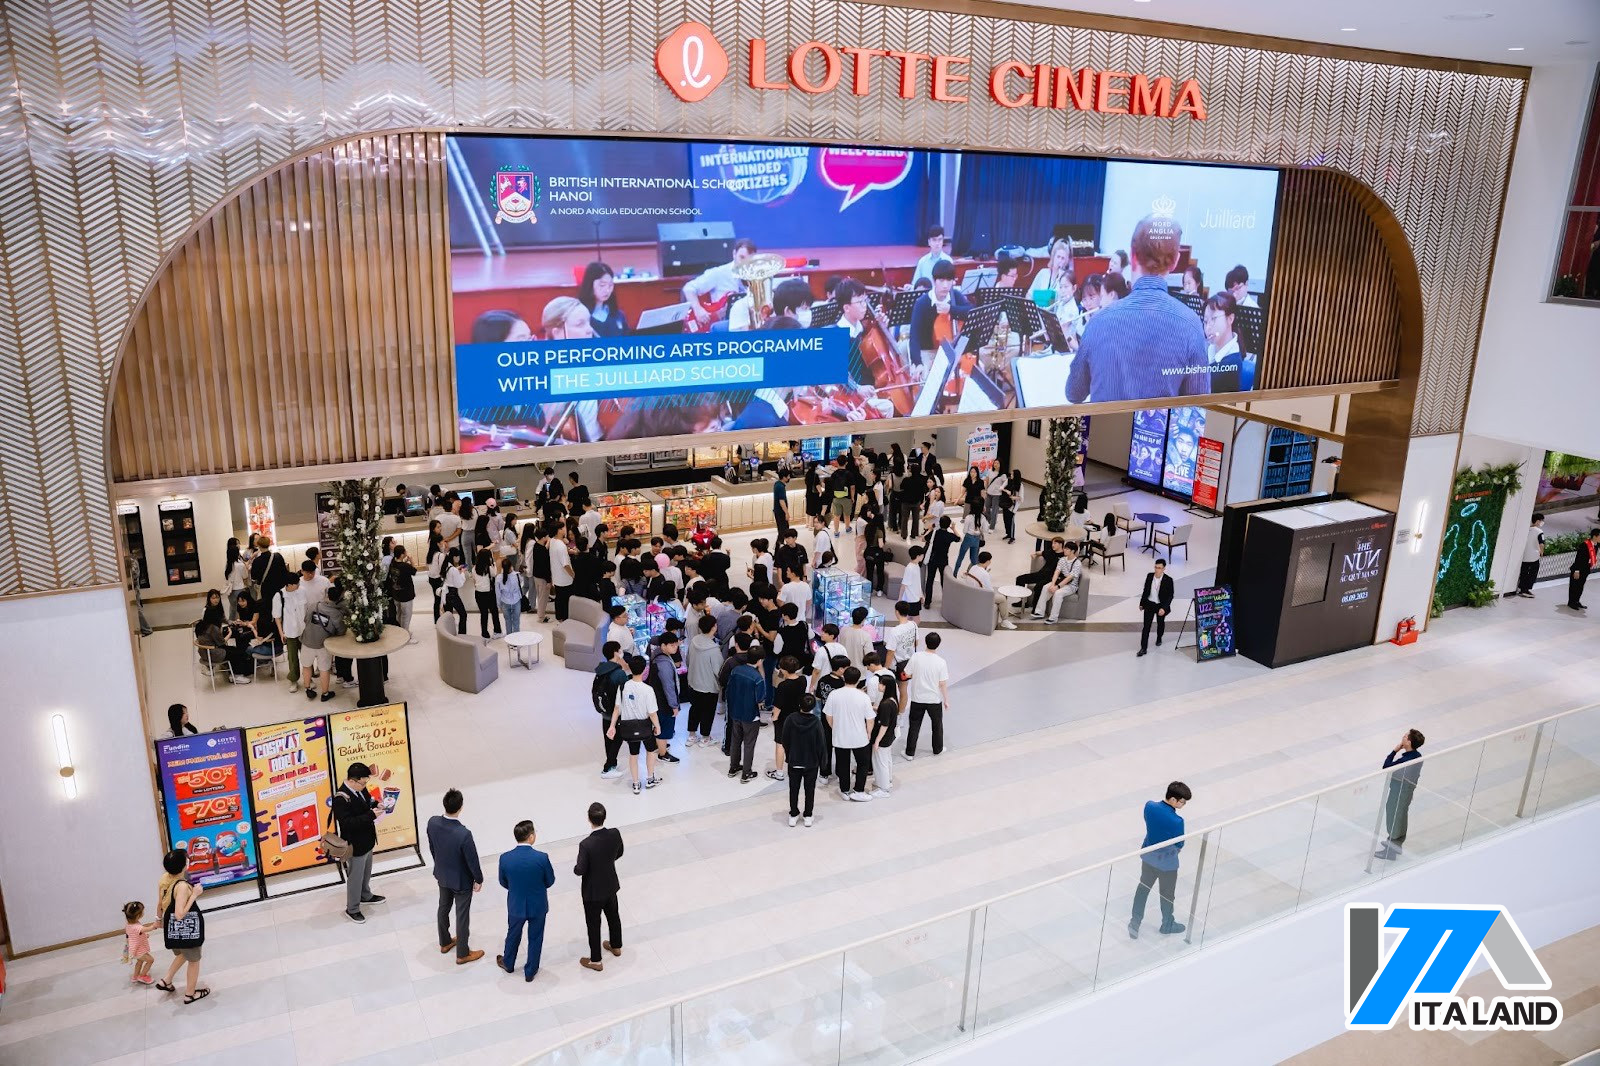 Lotte Mall Tây Hồ trung tâm thương mại lớn nhất Võ Chí Công